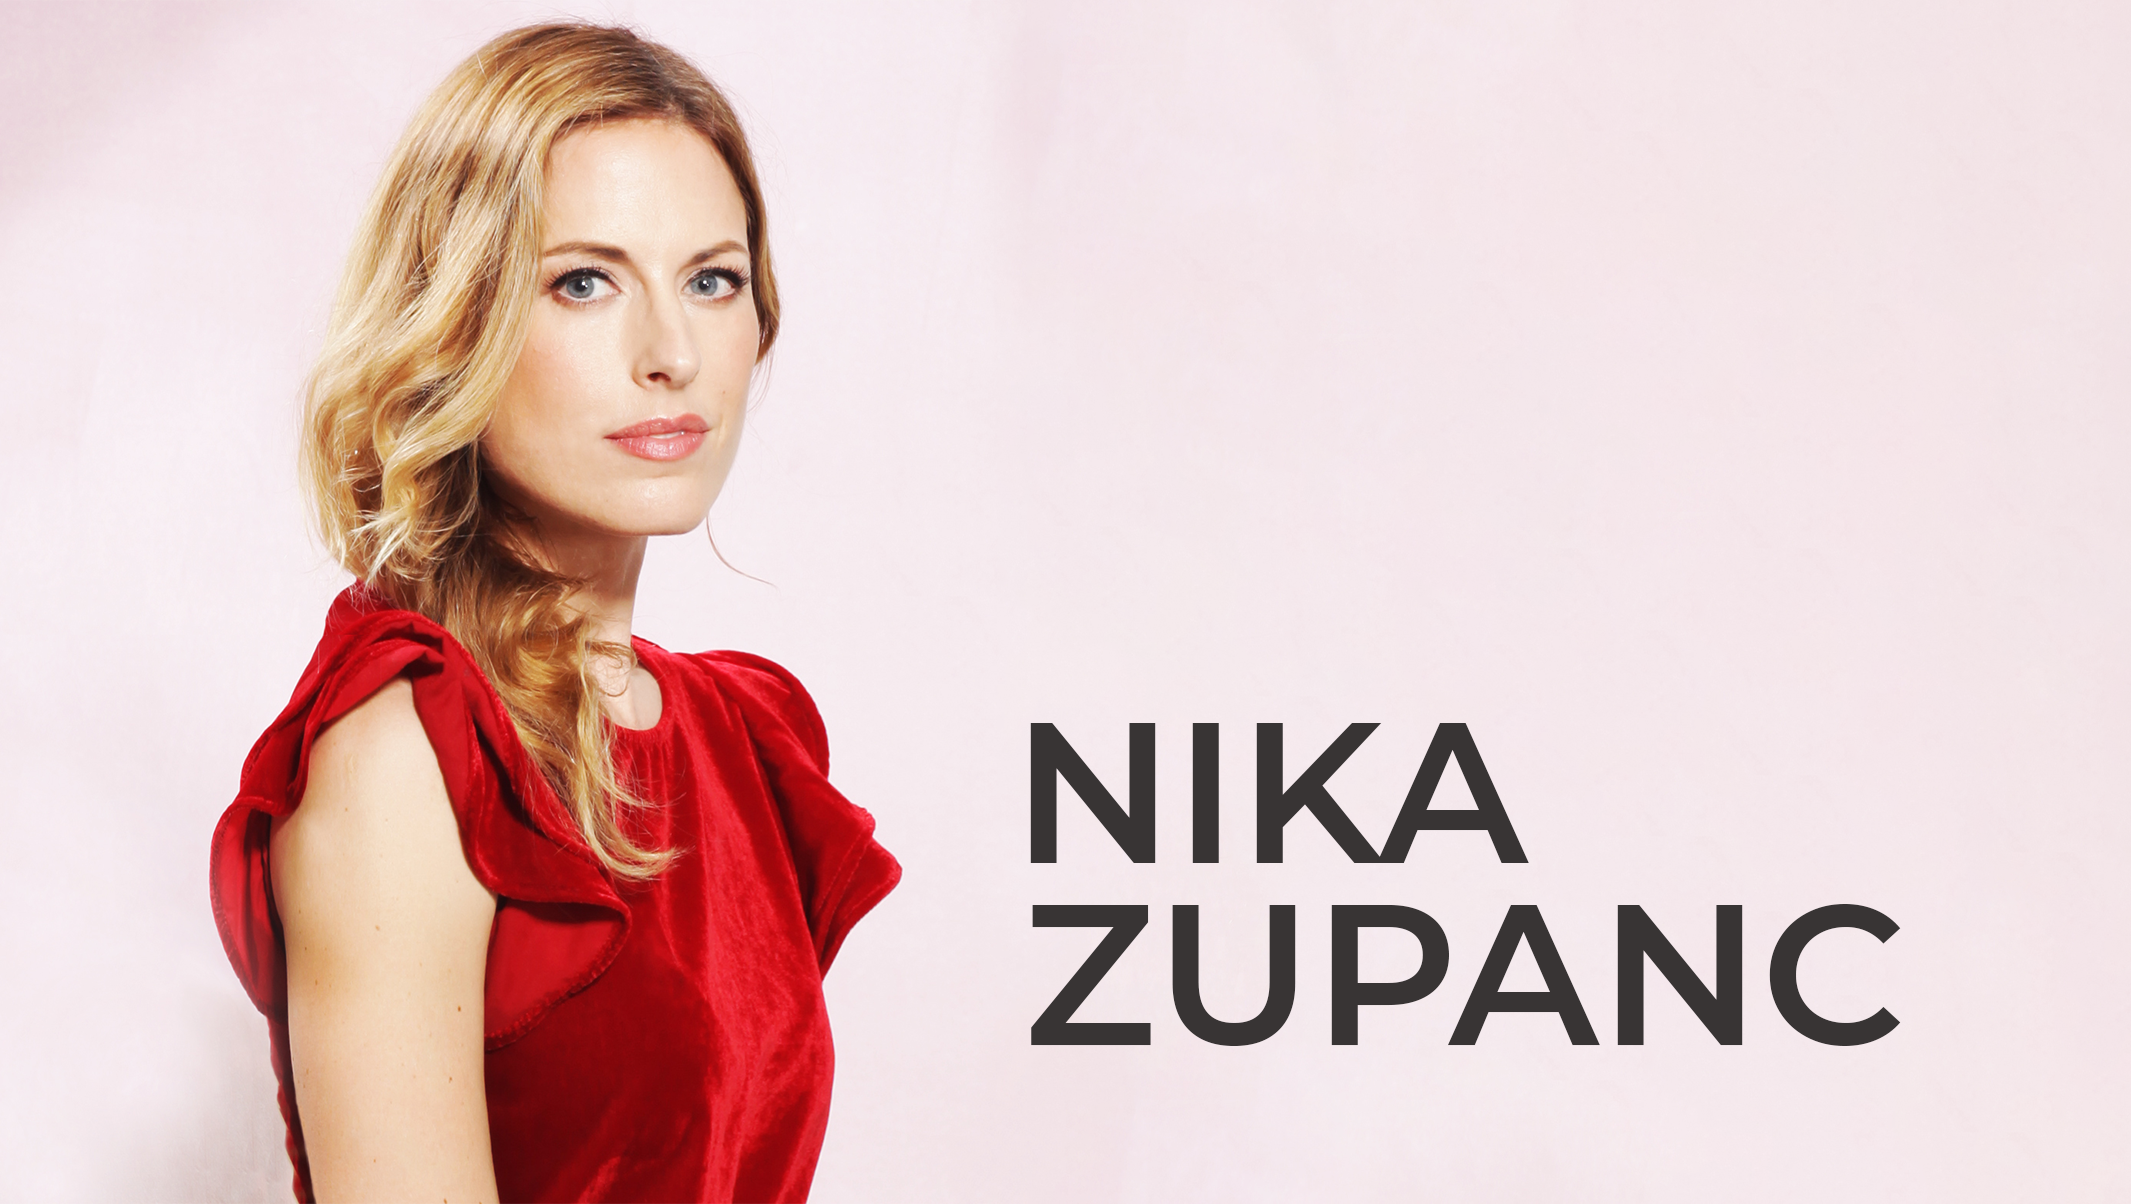 Nika Zupanc designs